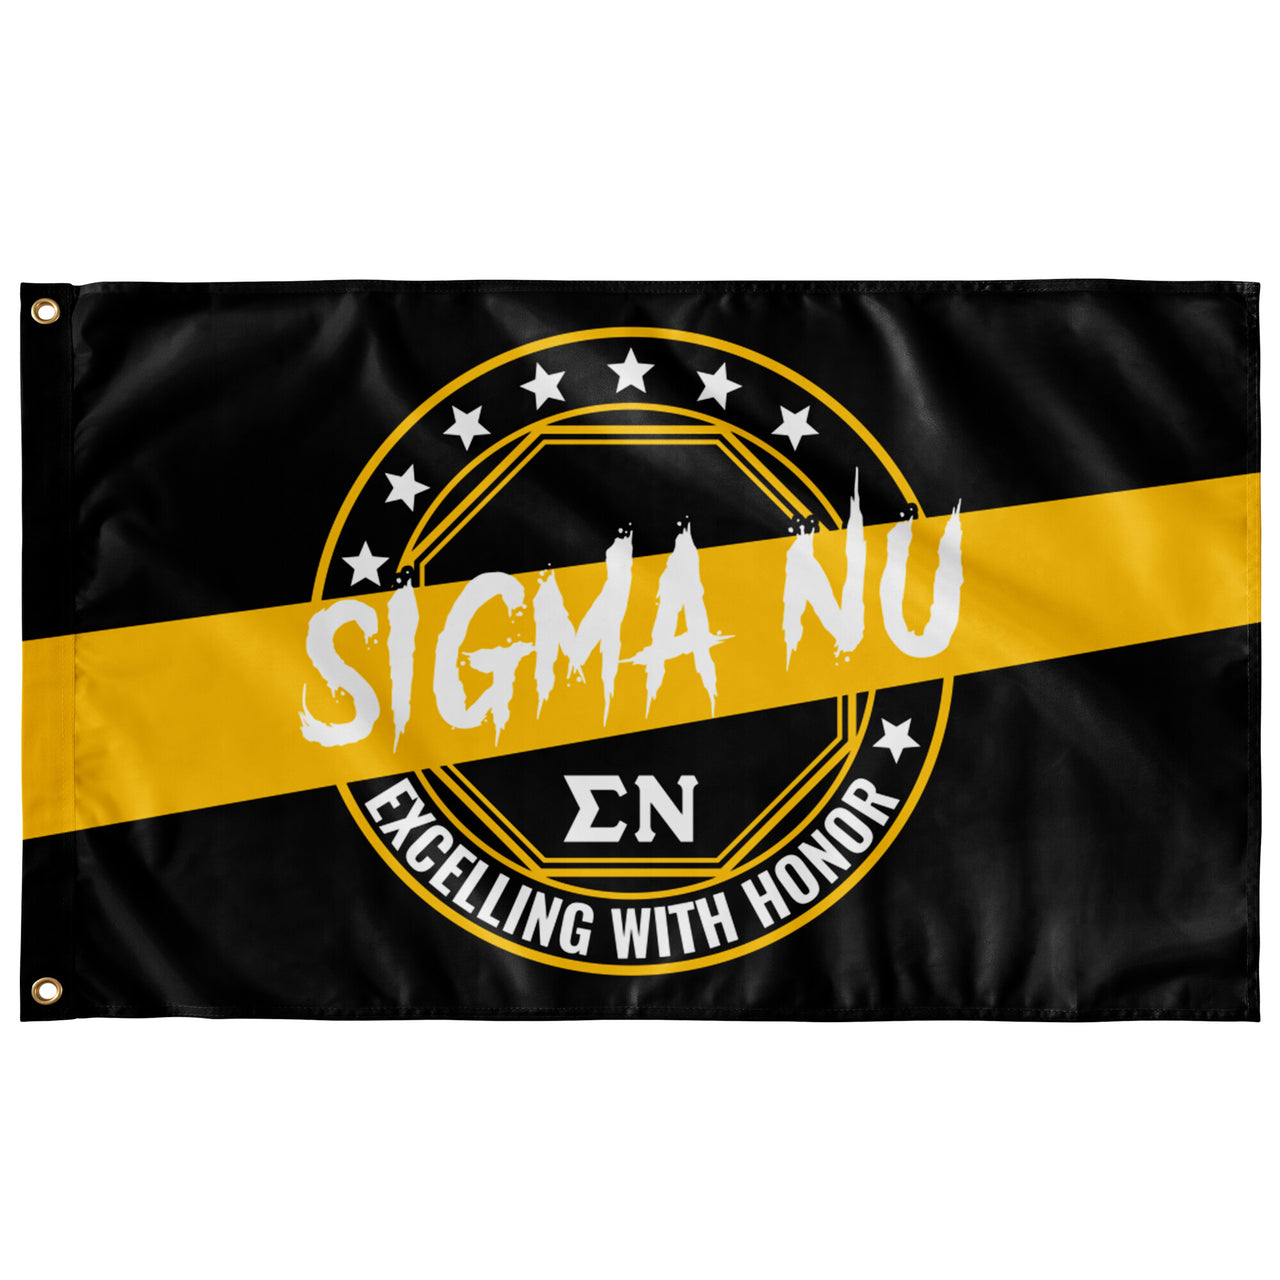 Sigma Nu Honor Flag